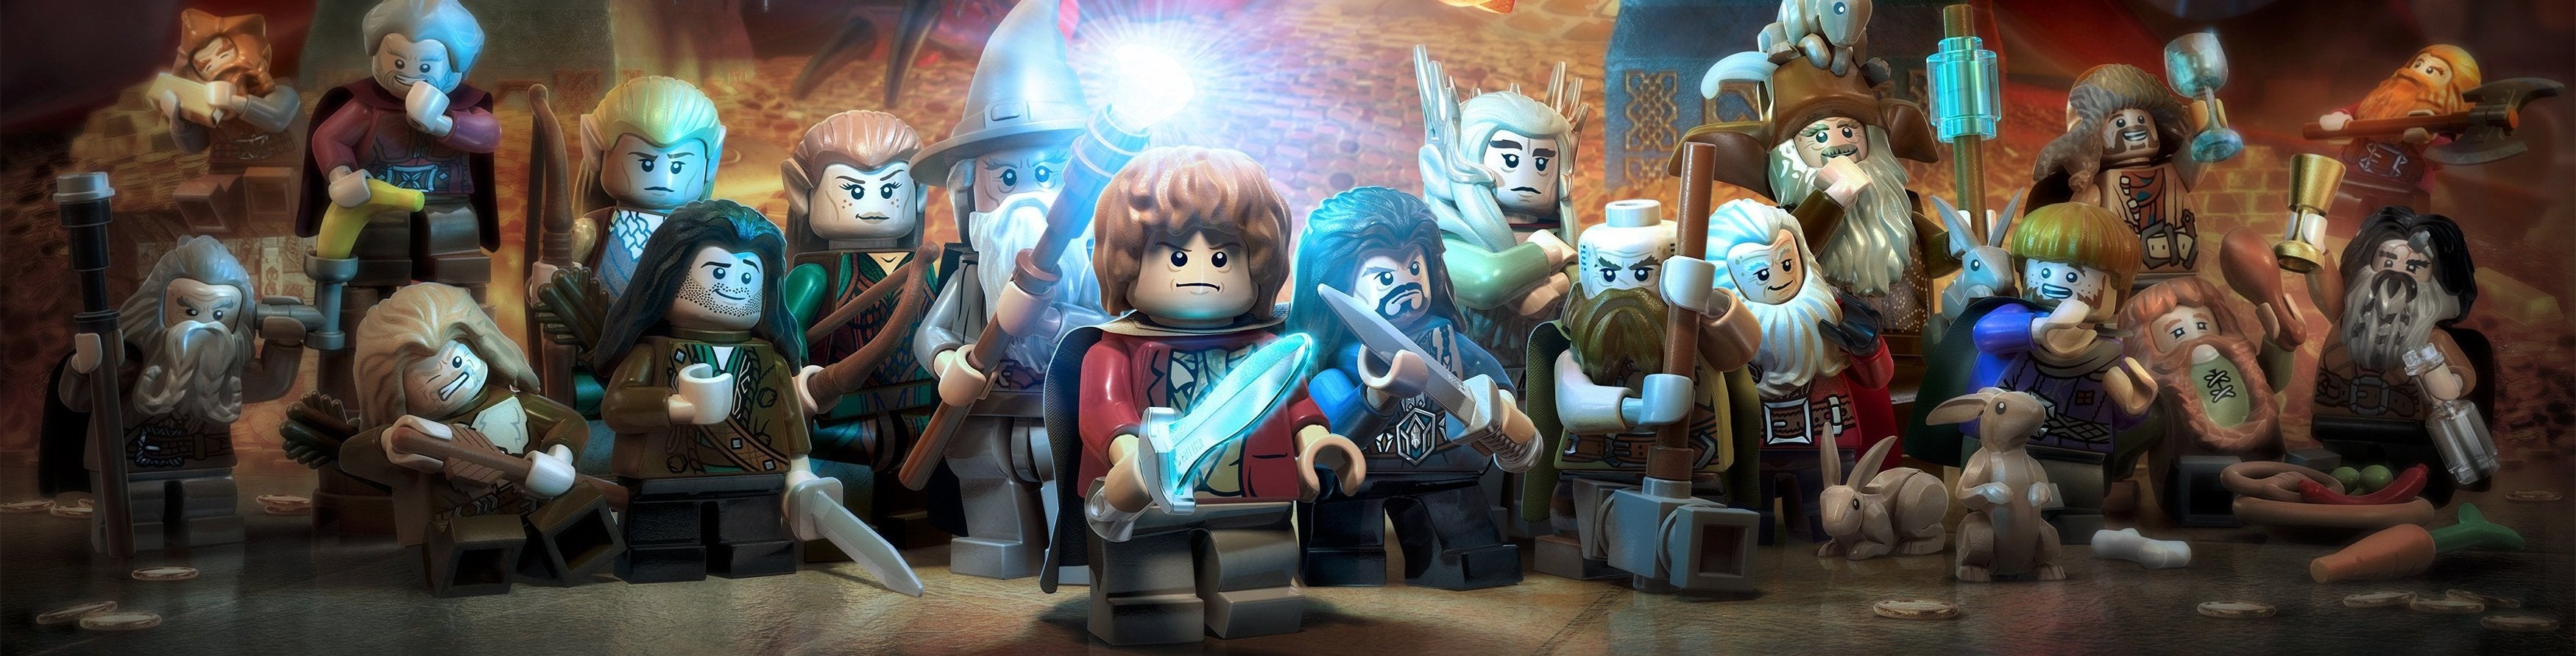 Afbeeldingen van LEGO: The Hobbit review